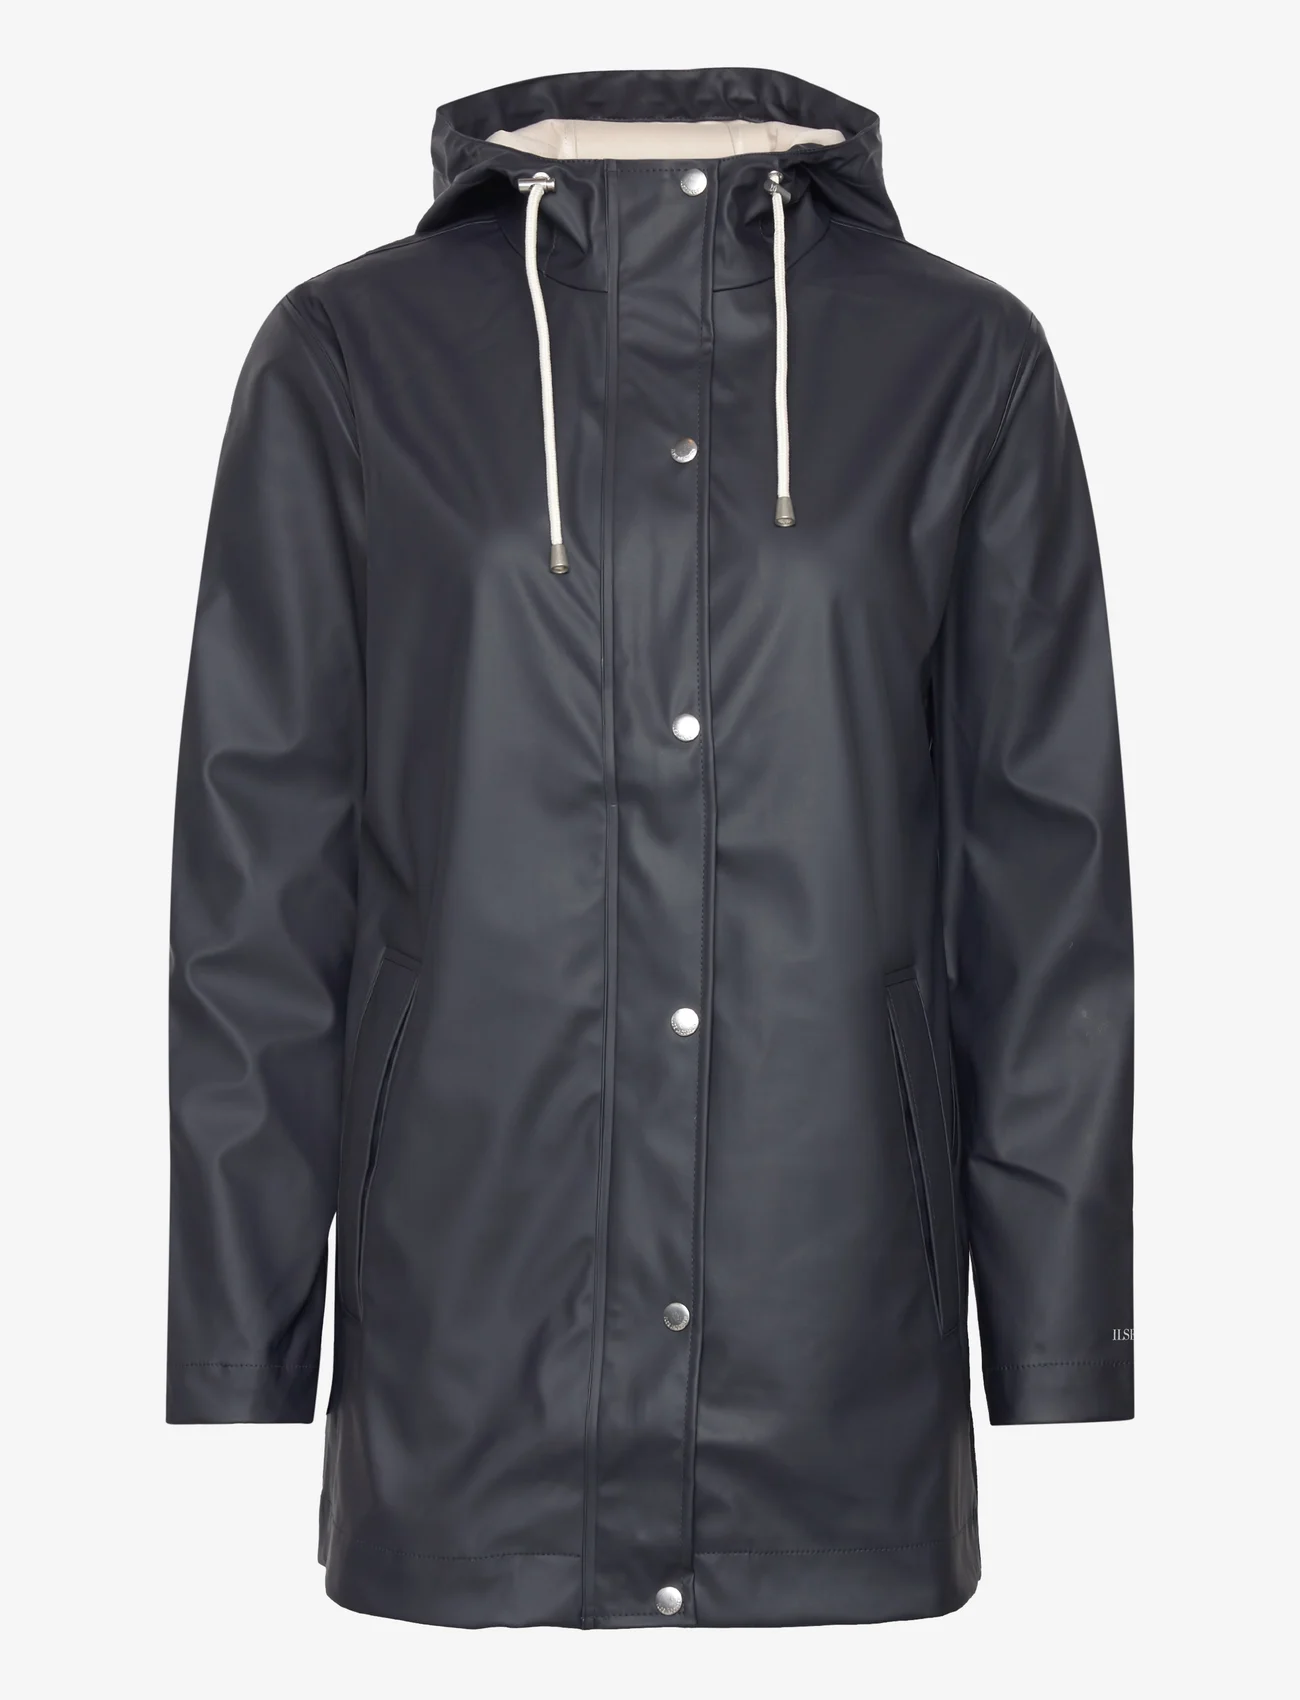 Ilse Jacobsen - Rain Jacket - płaszcze przeciwdeszczowe - 660 dark indigo - 0